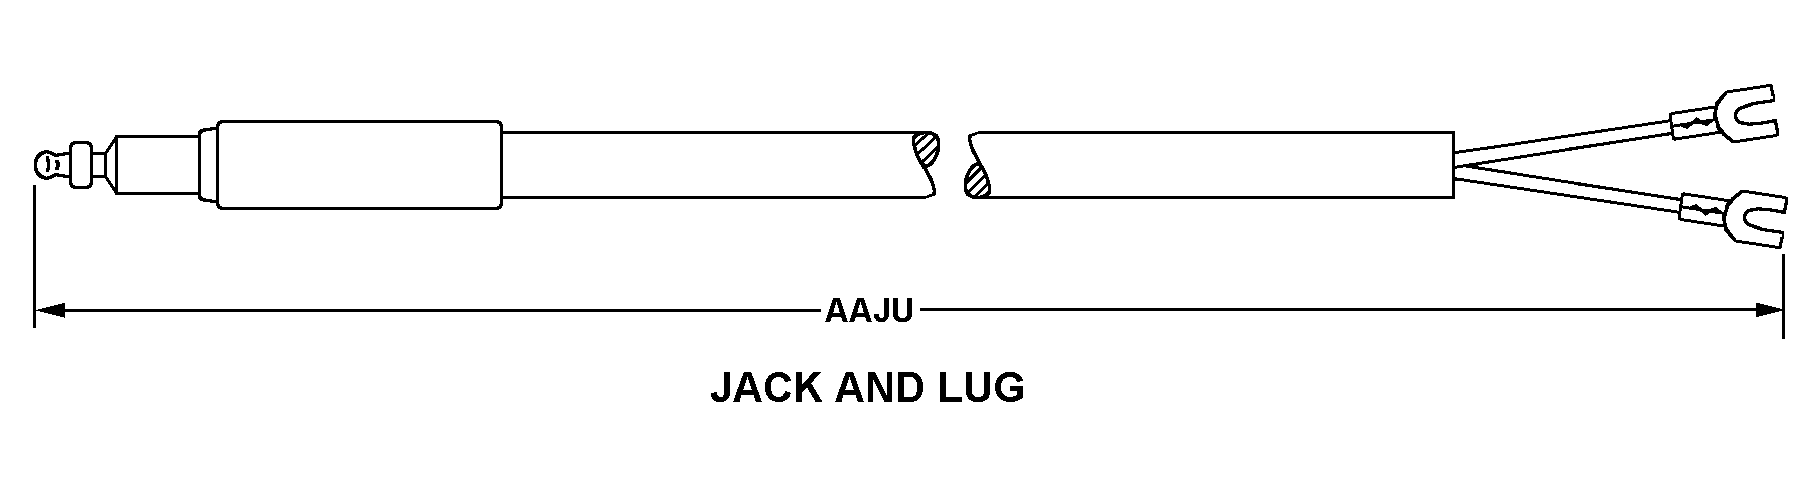 JACK AND LUG style nsn 5995-01-076-9957